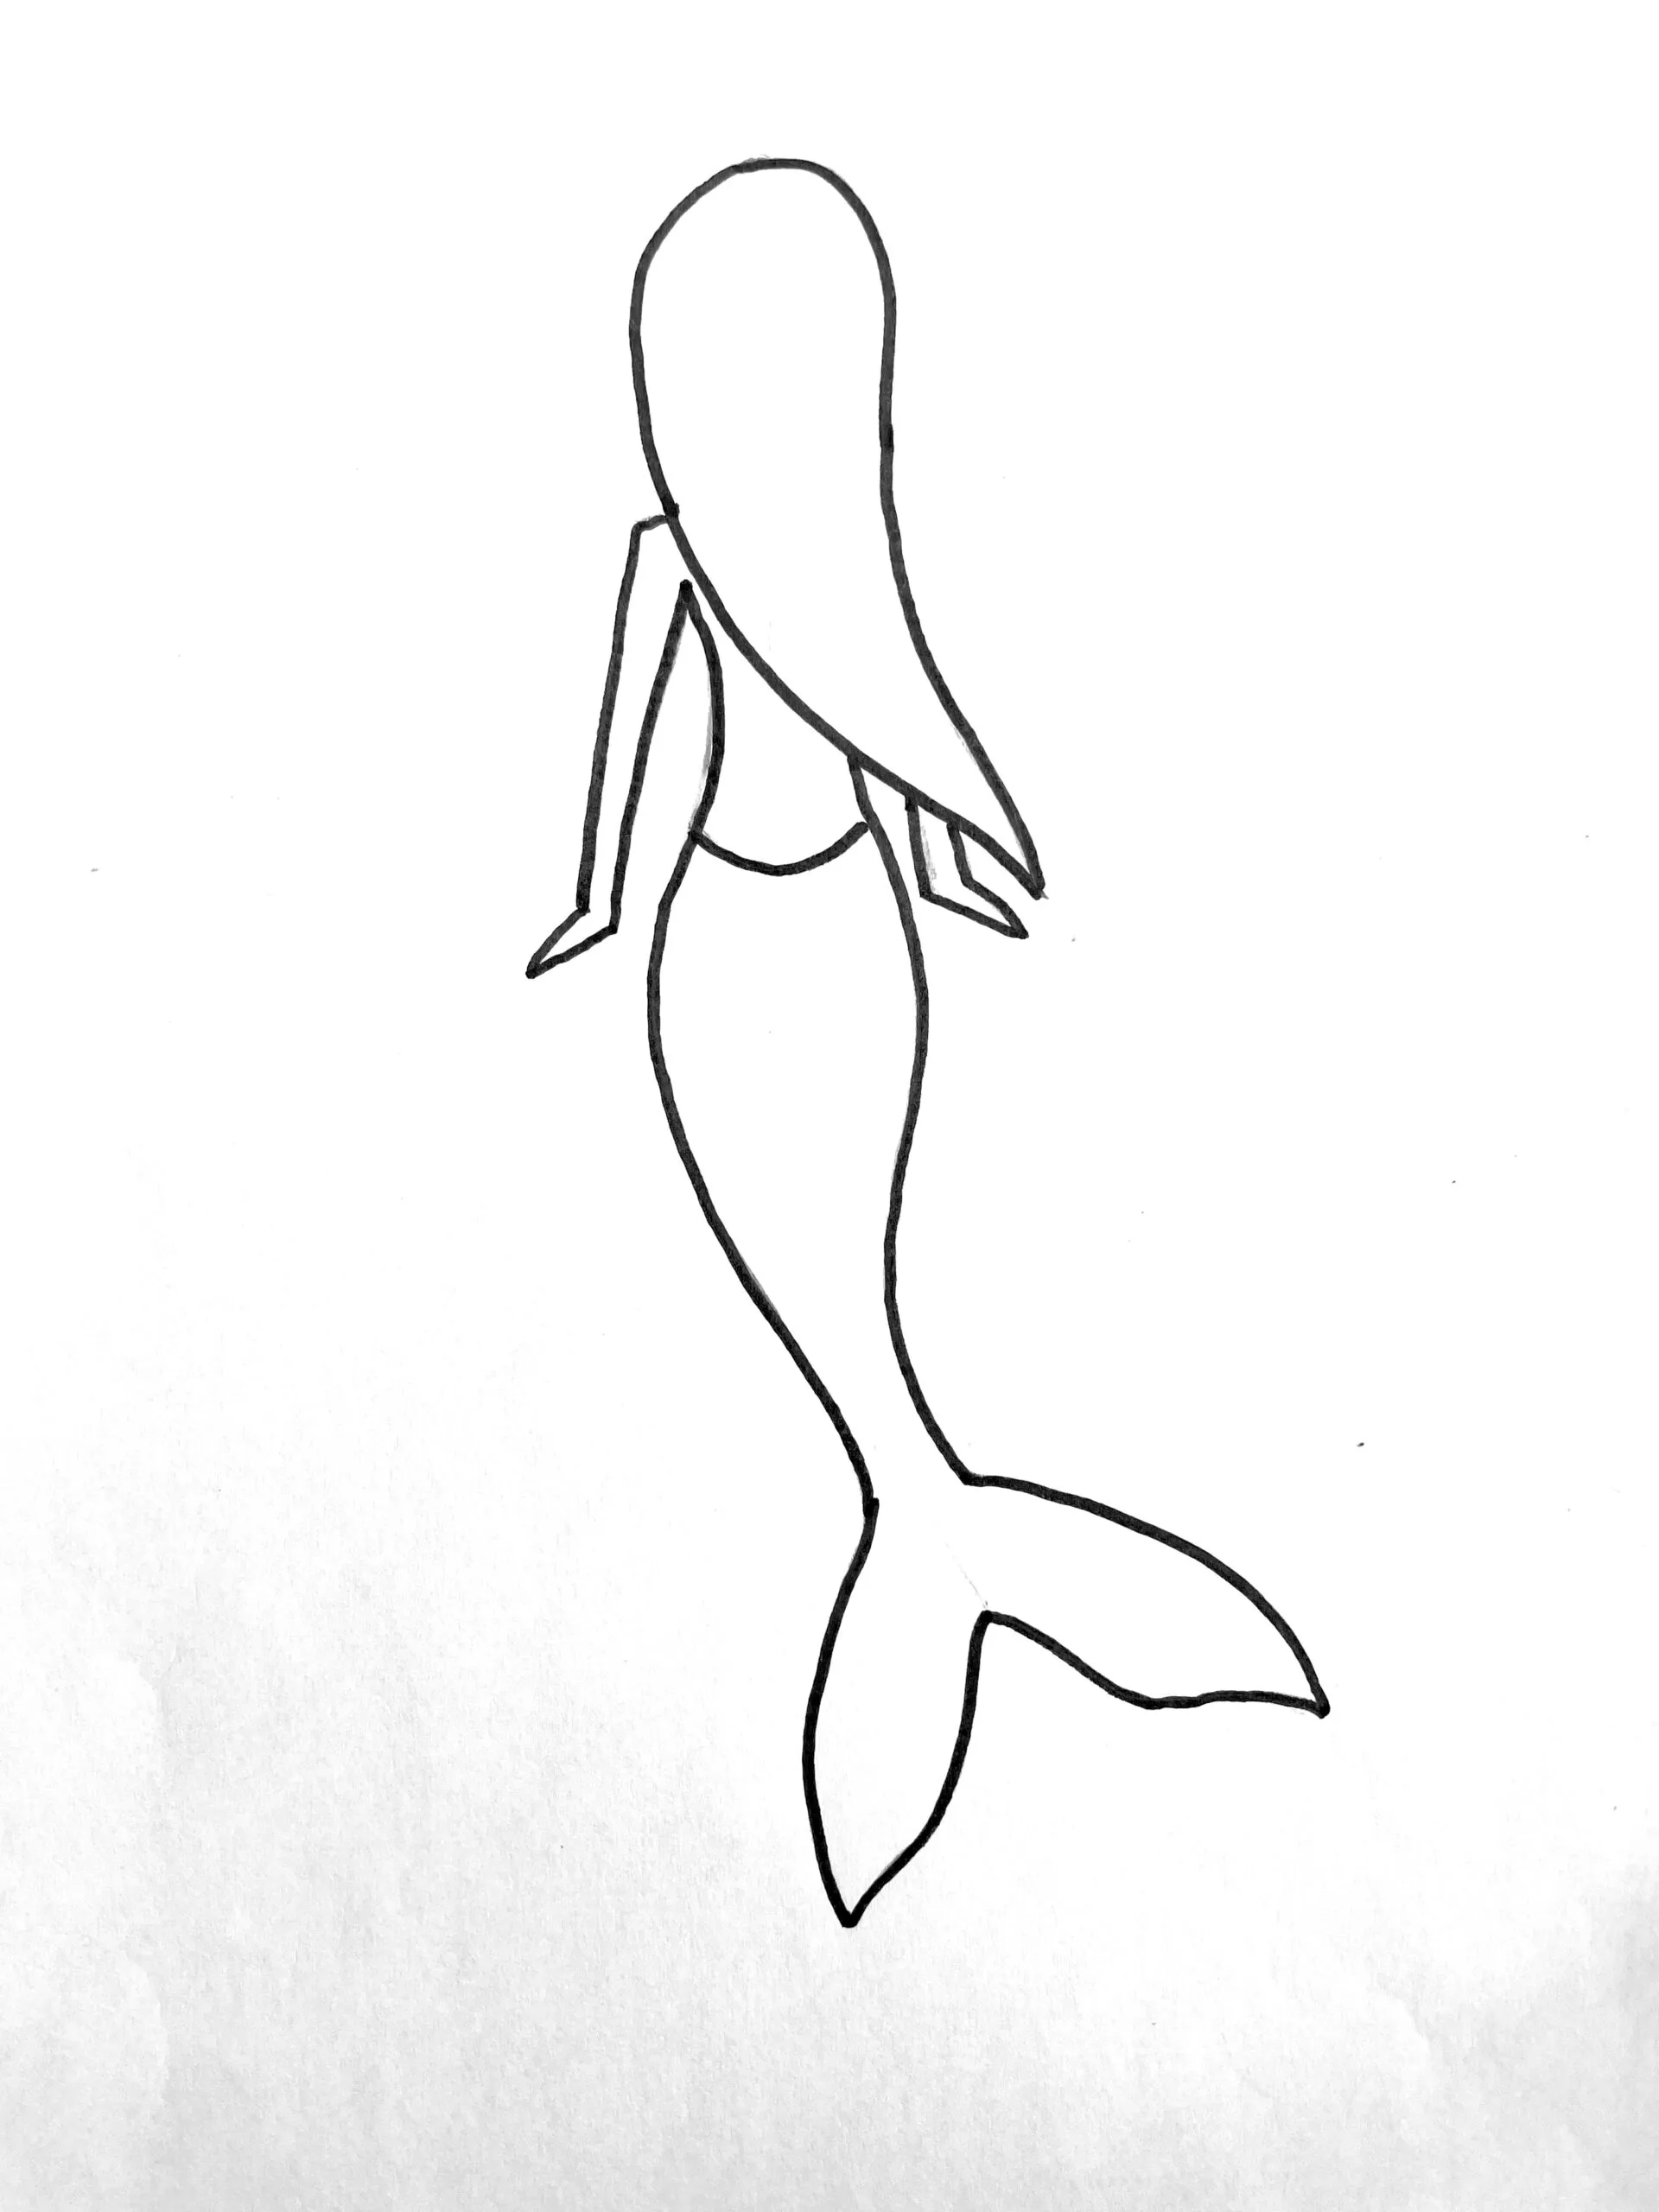 mermaid drawing easy